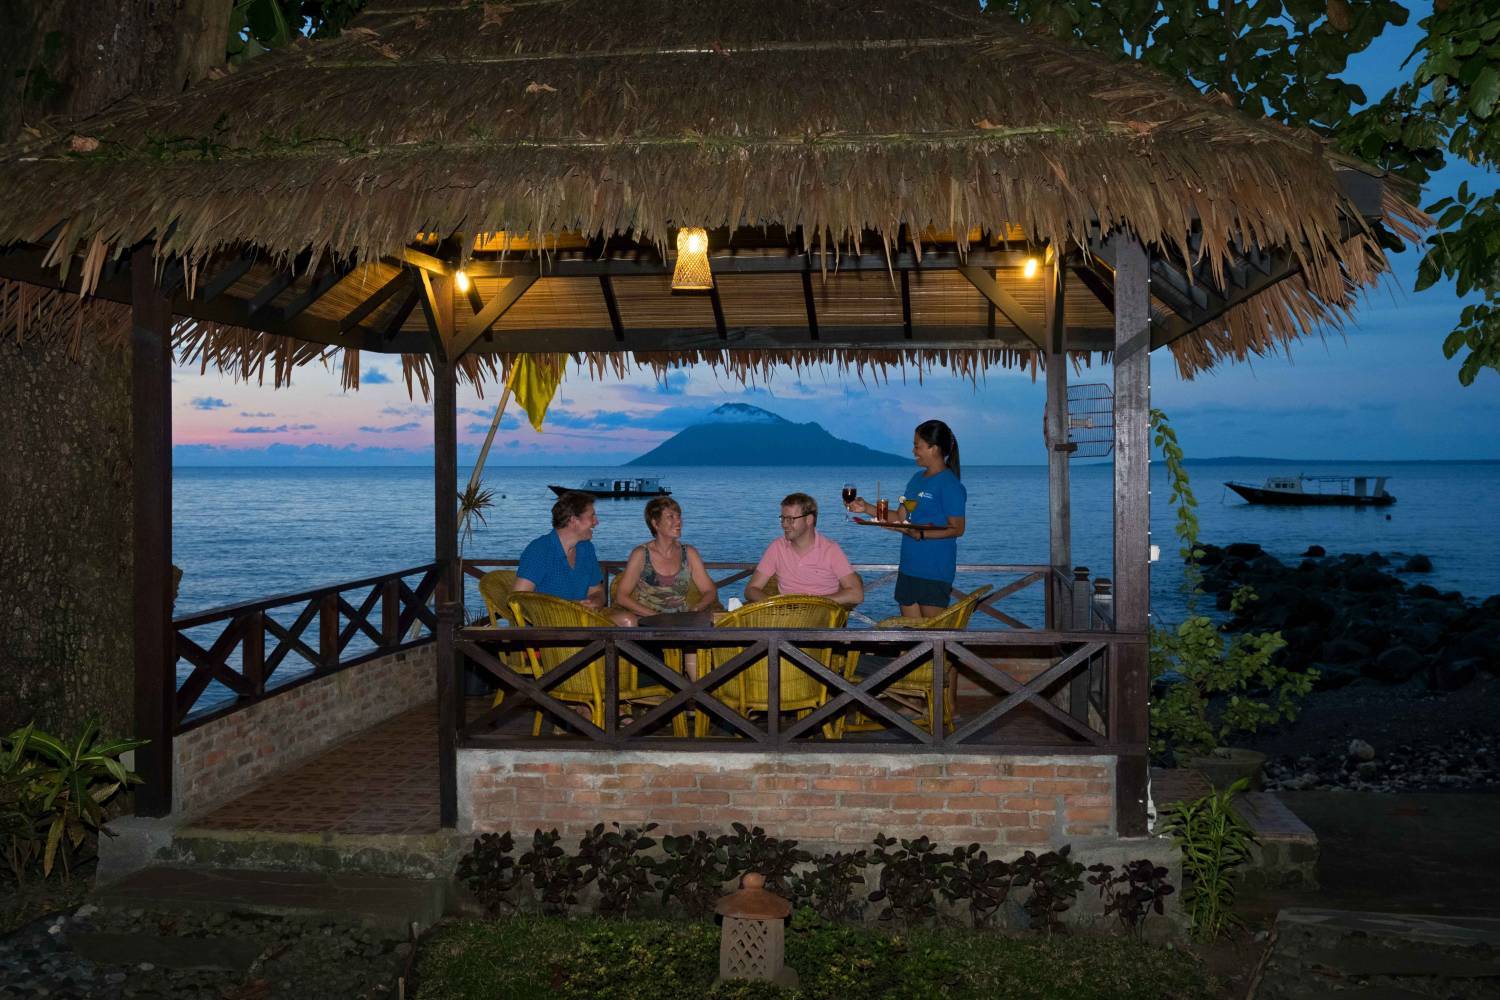 【印尼】Murex Manado Dive Resort  5日4夜潛水自由行套票